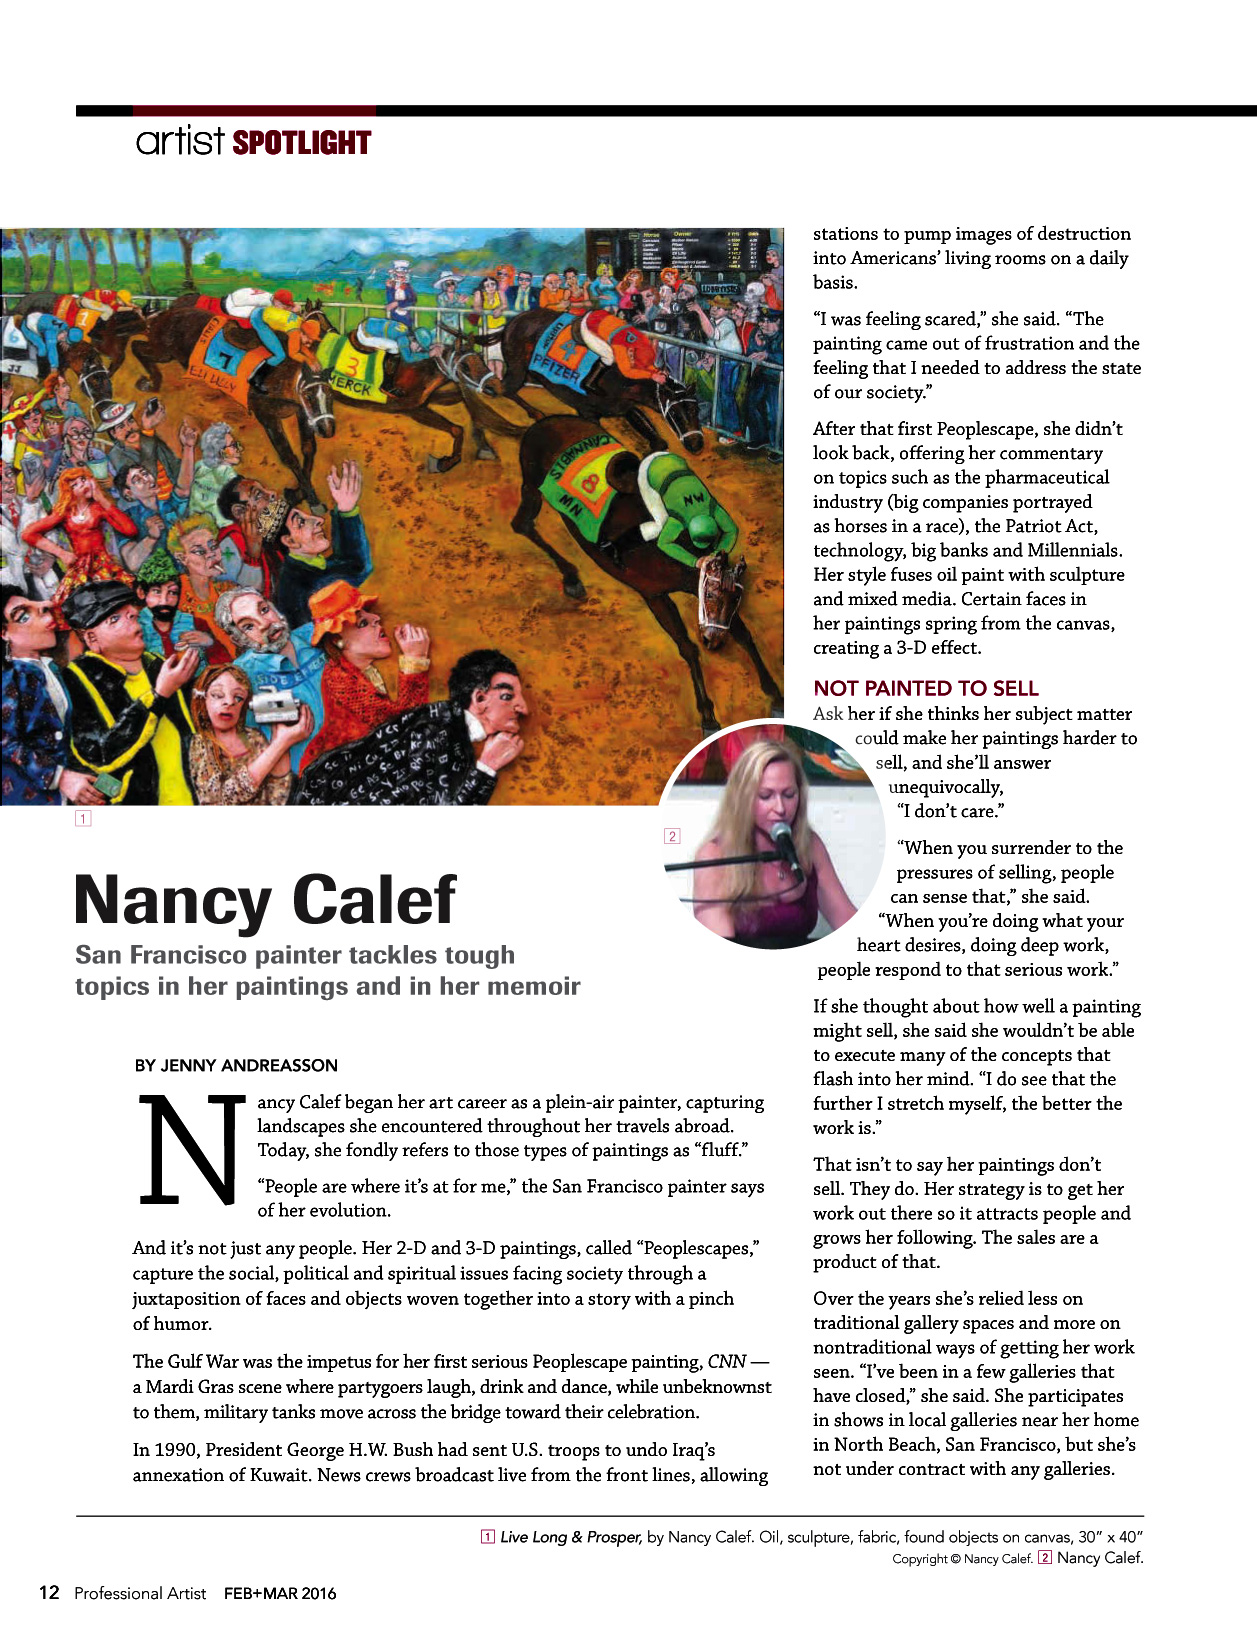 Nancy Calef Professional Artist Mag Feb/March 2016